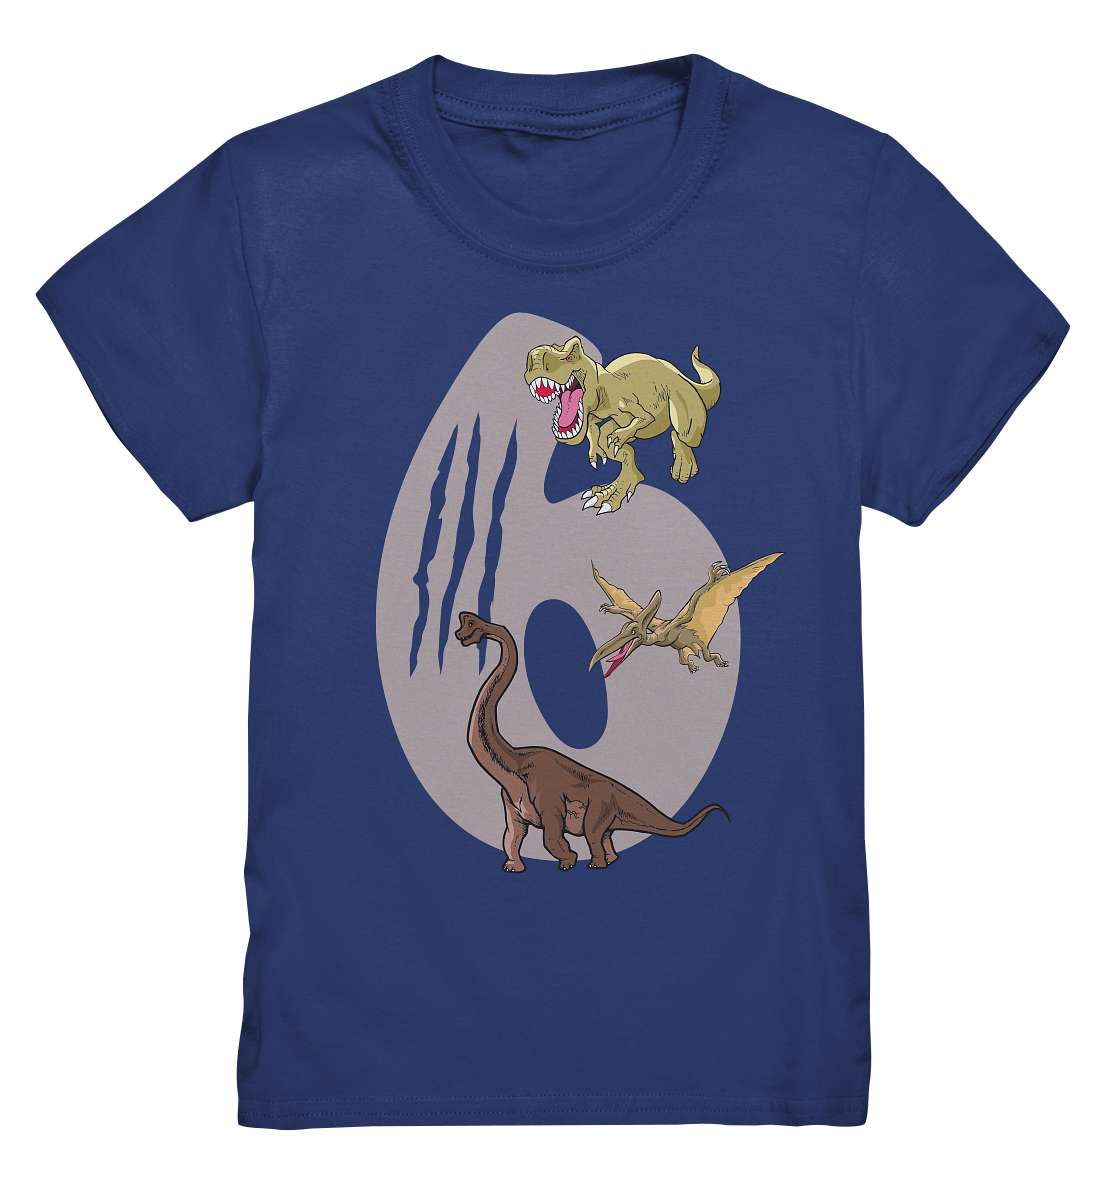 6. Kinder Geburtstag - T-REX Dinosaurier - Ich bin 5 Jahre - Geschenk - Kids Premium Shirt